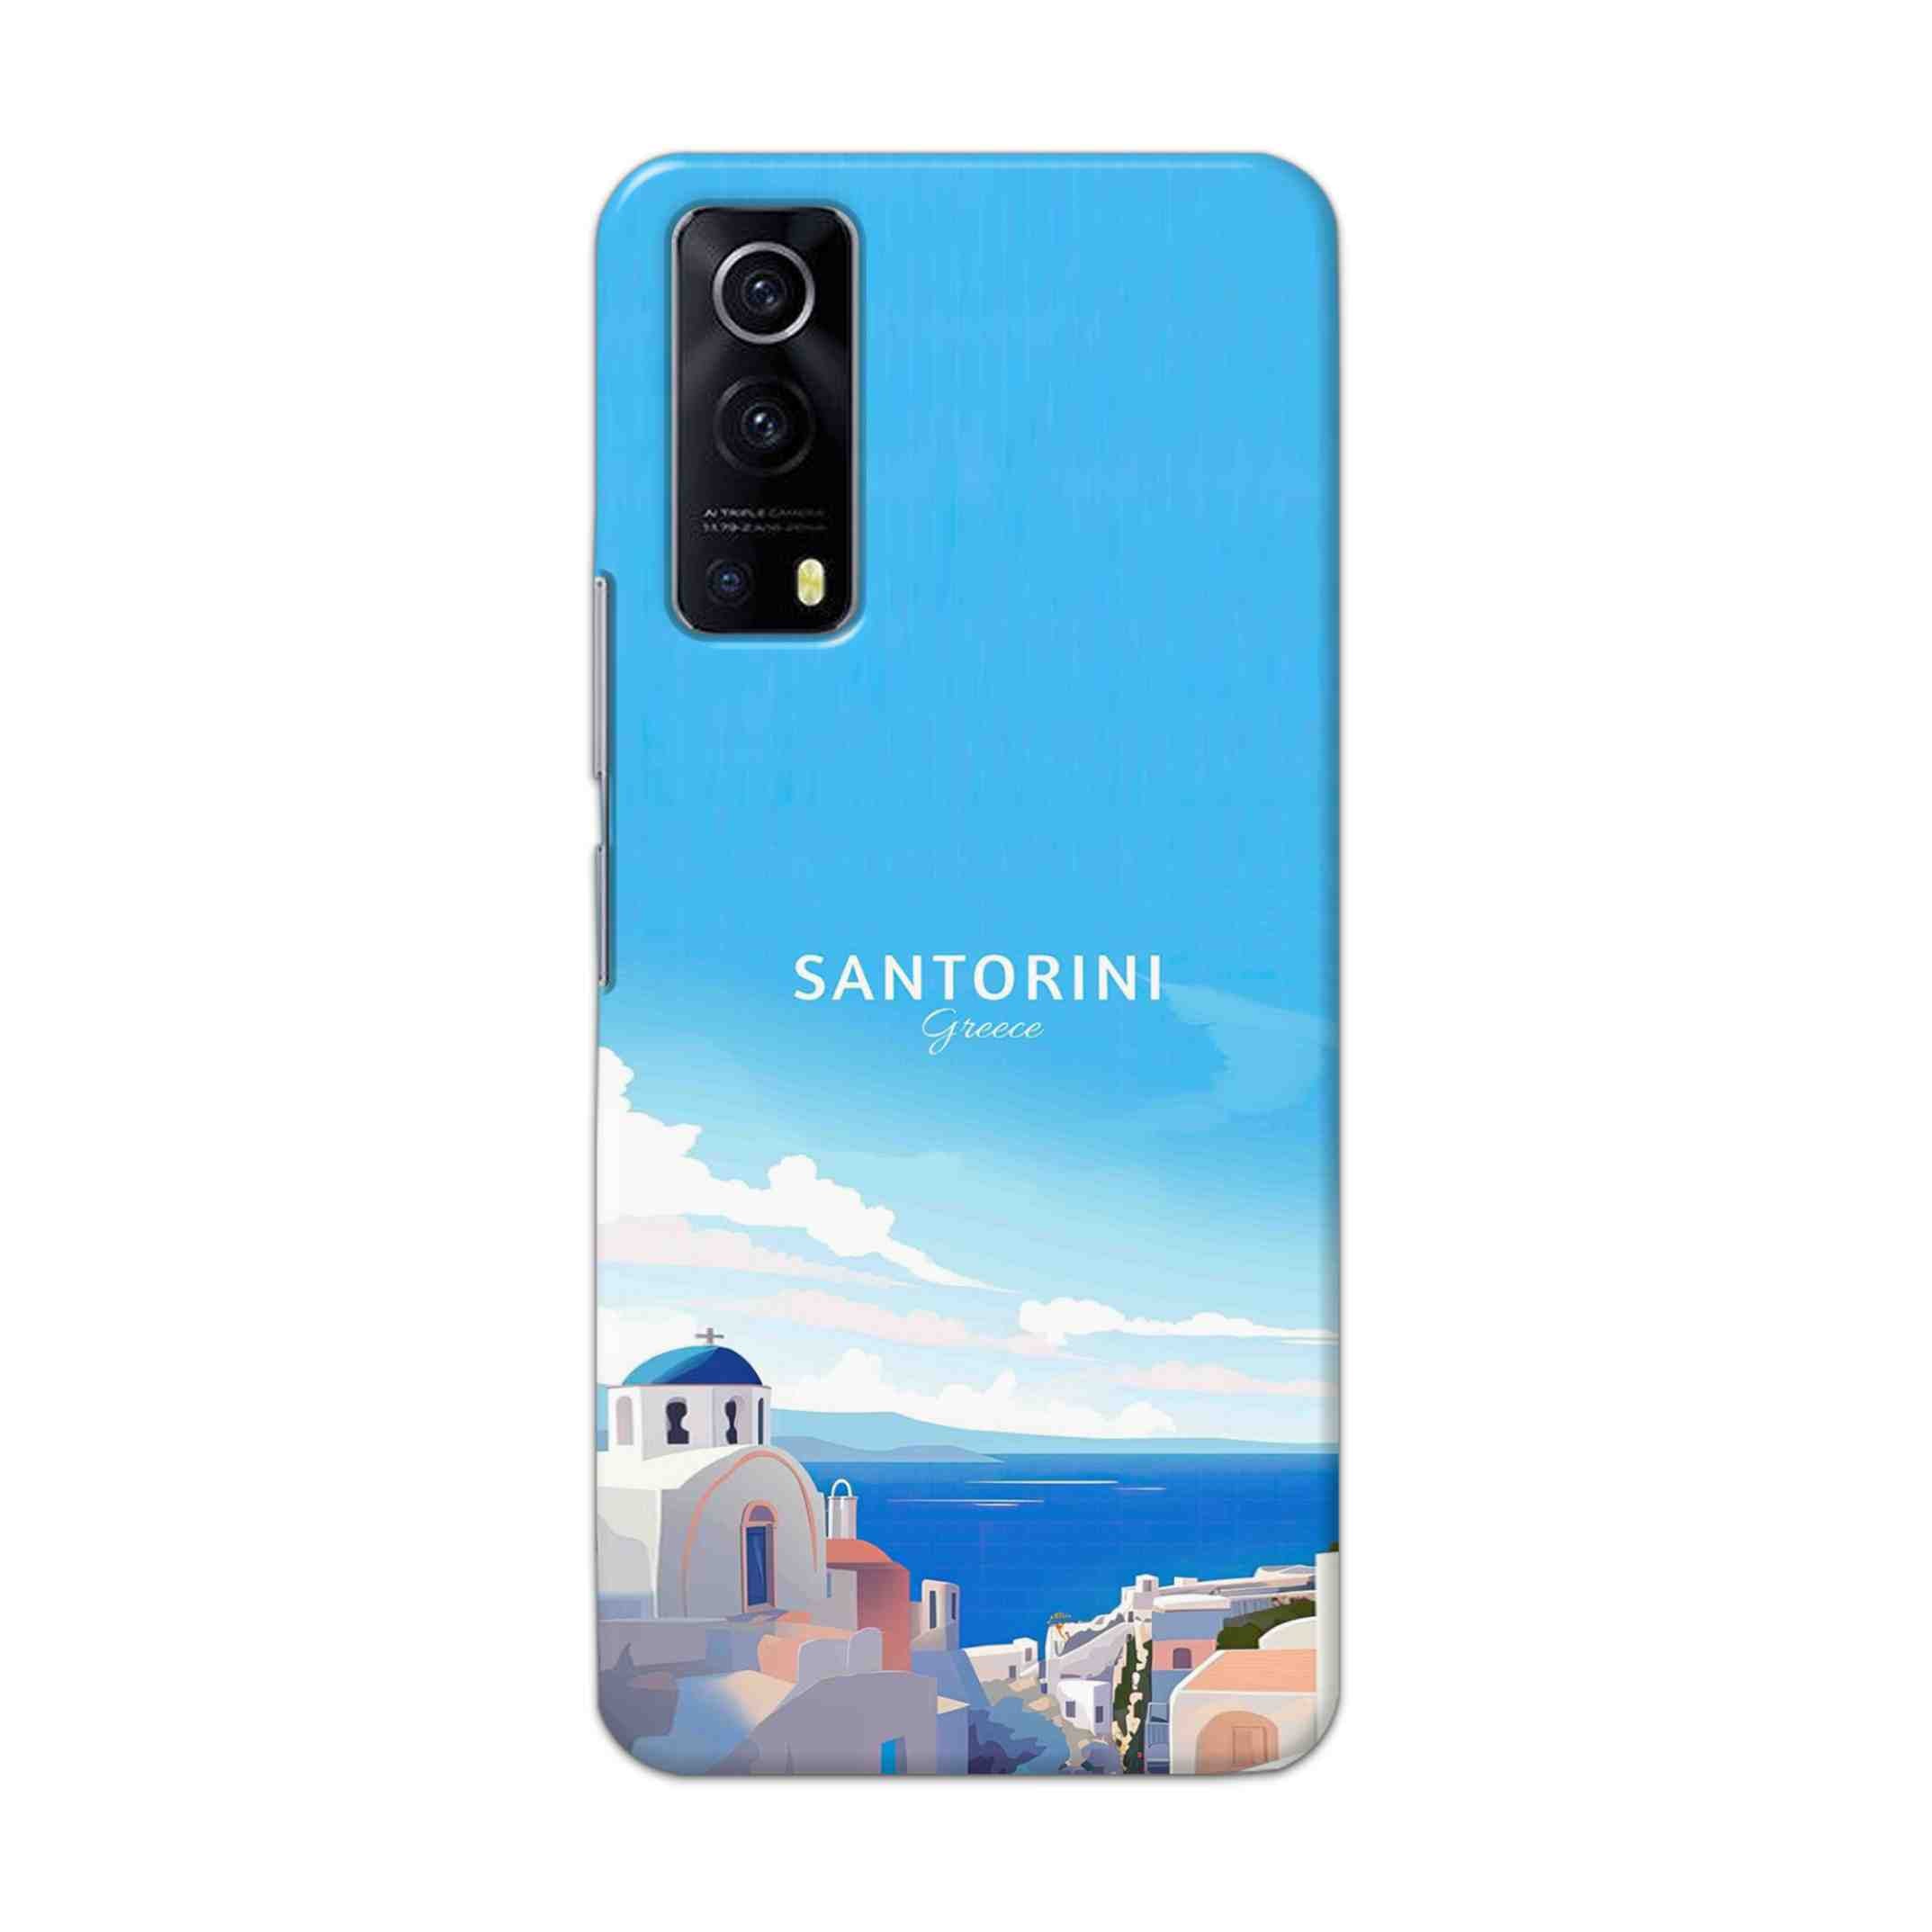 Buy Santorini Hard Back Mobile Phone Case Cover For Vivo IQOO Z3 Online